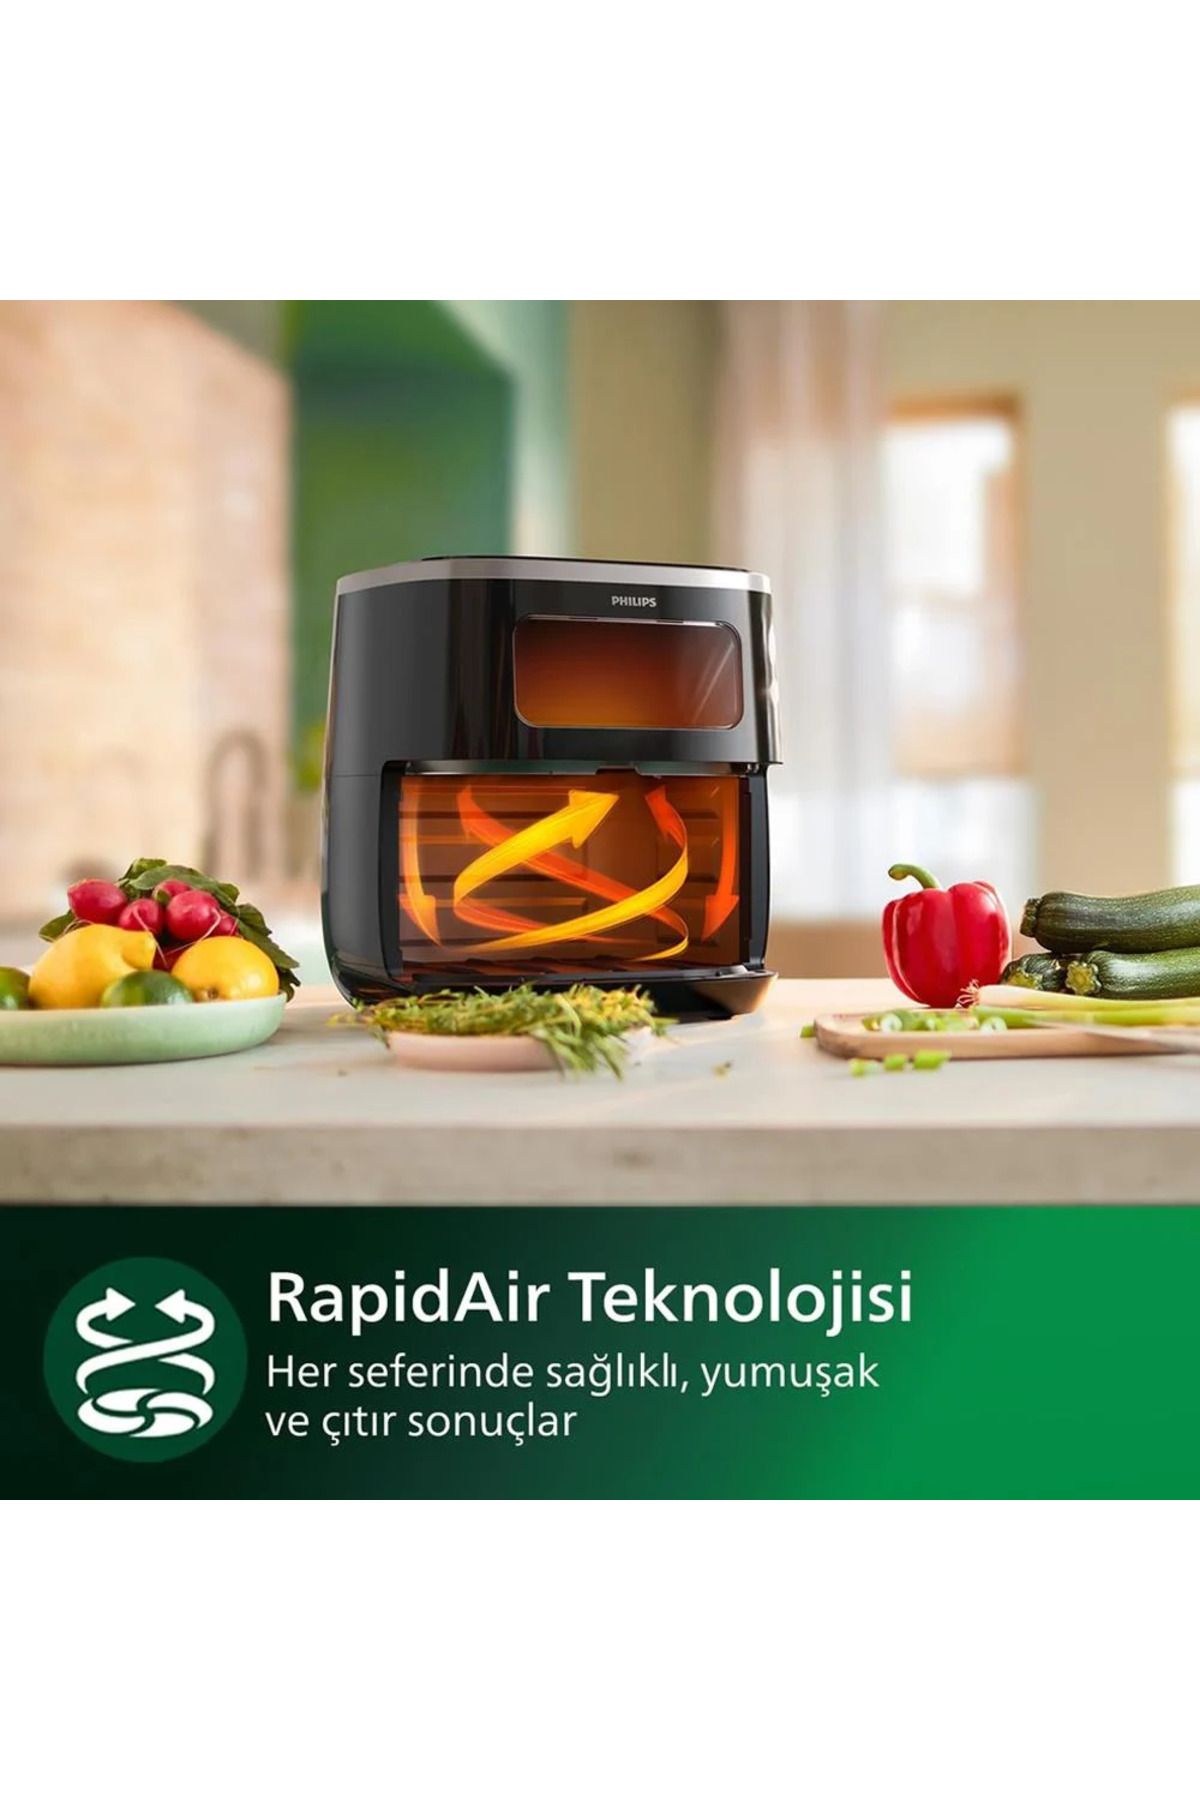 Philips RapidAir Teknolojisi XL 5,6LT 3000 Serisi 7 ön ayarlı dokunmatik ekran Sağlıklı yaşam için Airfryer